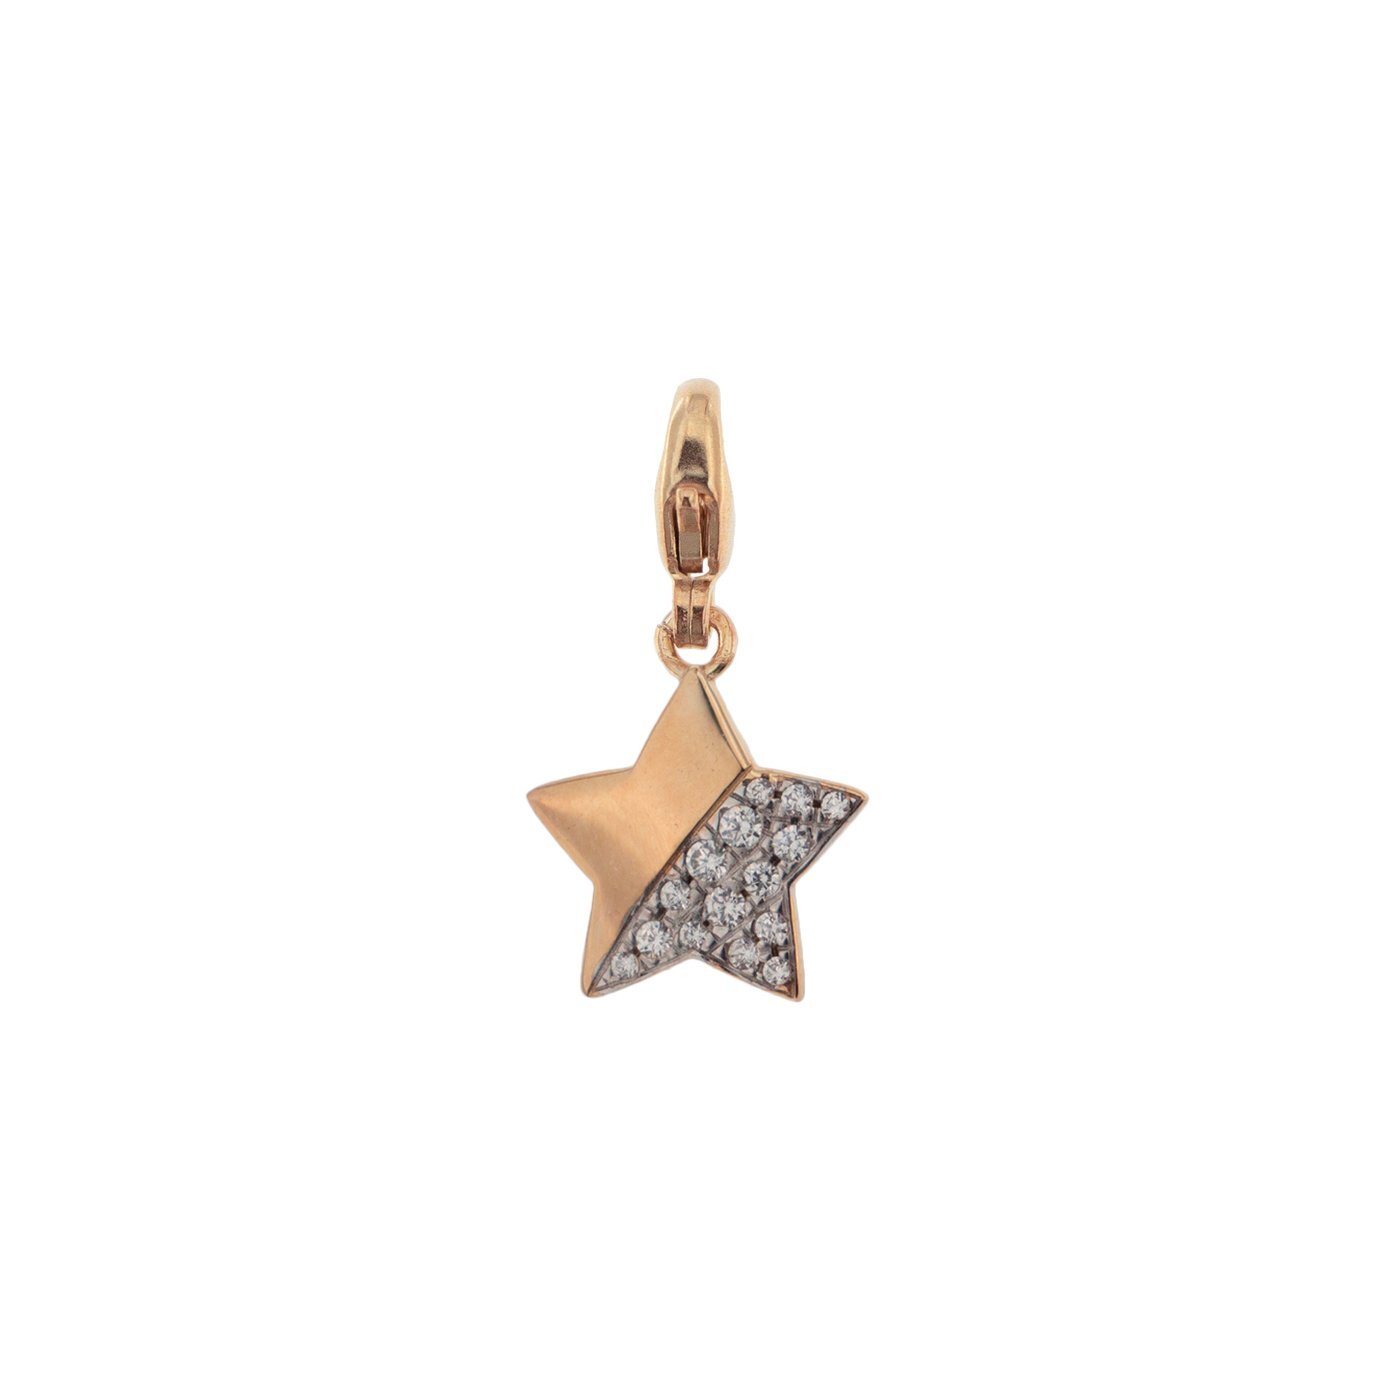 Rue Des Mille ciondolo in argento 925 placcato in oro rosa 18 kt con soggetto "stella" e zirconi bianchi - Codice ciondolo: CNZ-007 STE